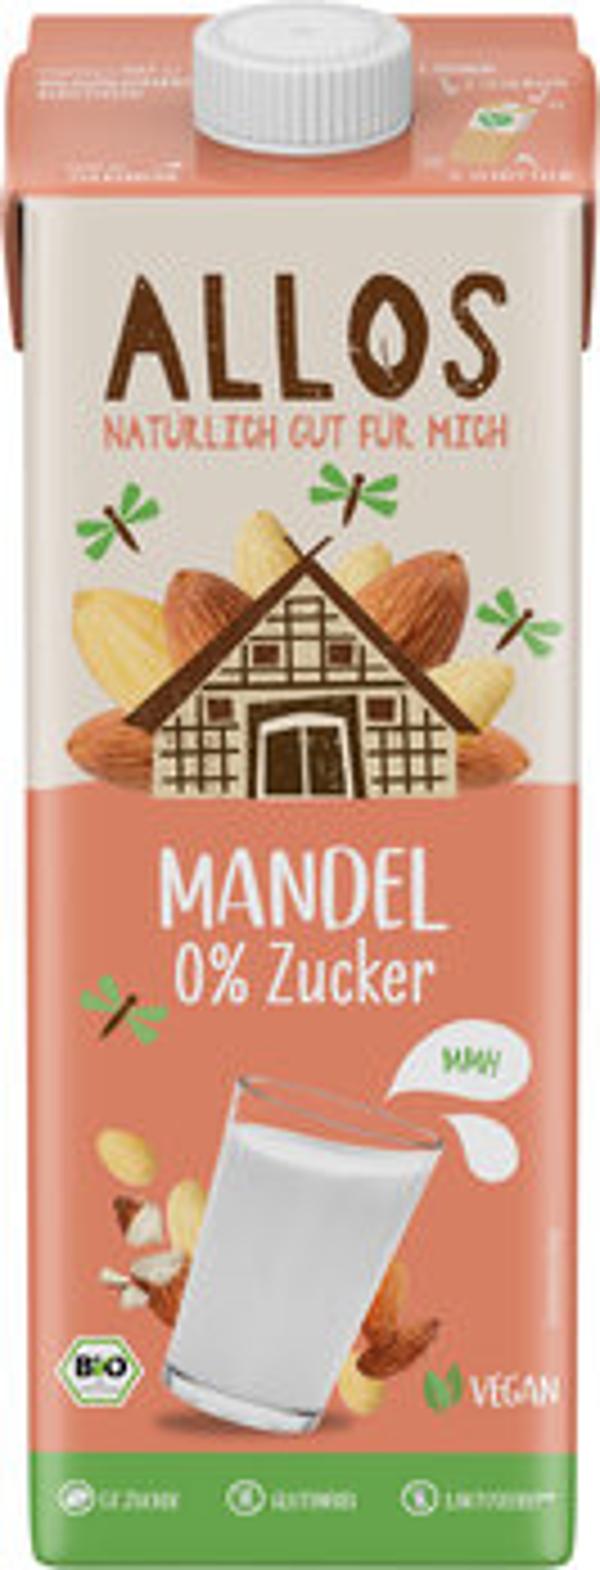 Produktfoto zu Mandel Drink Naturell